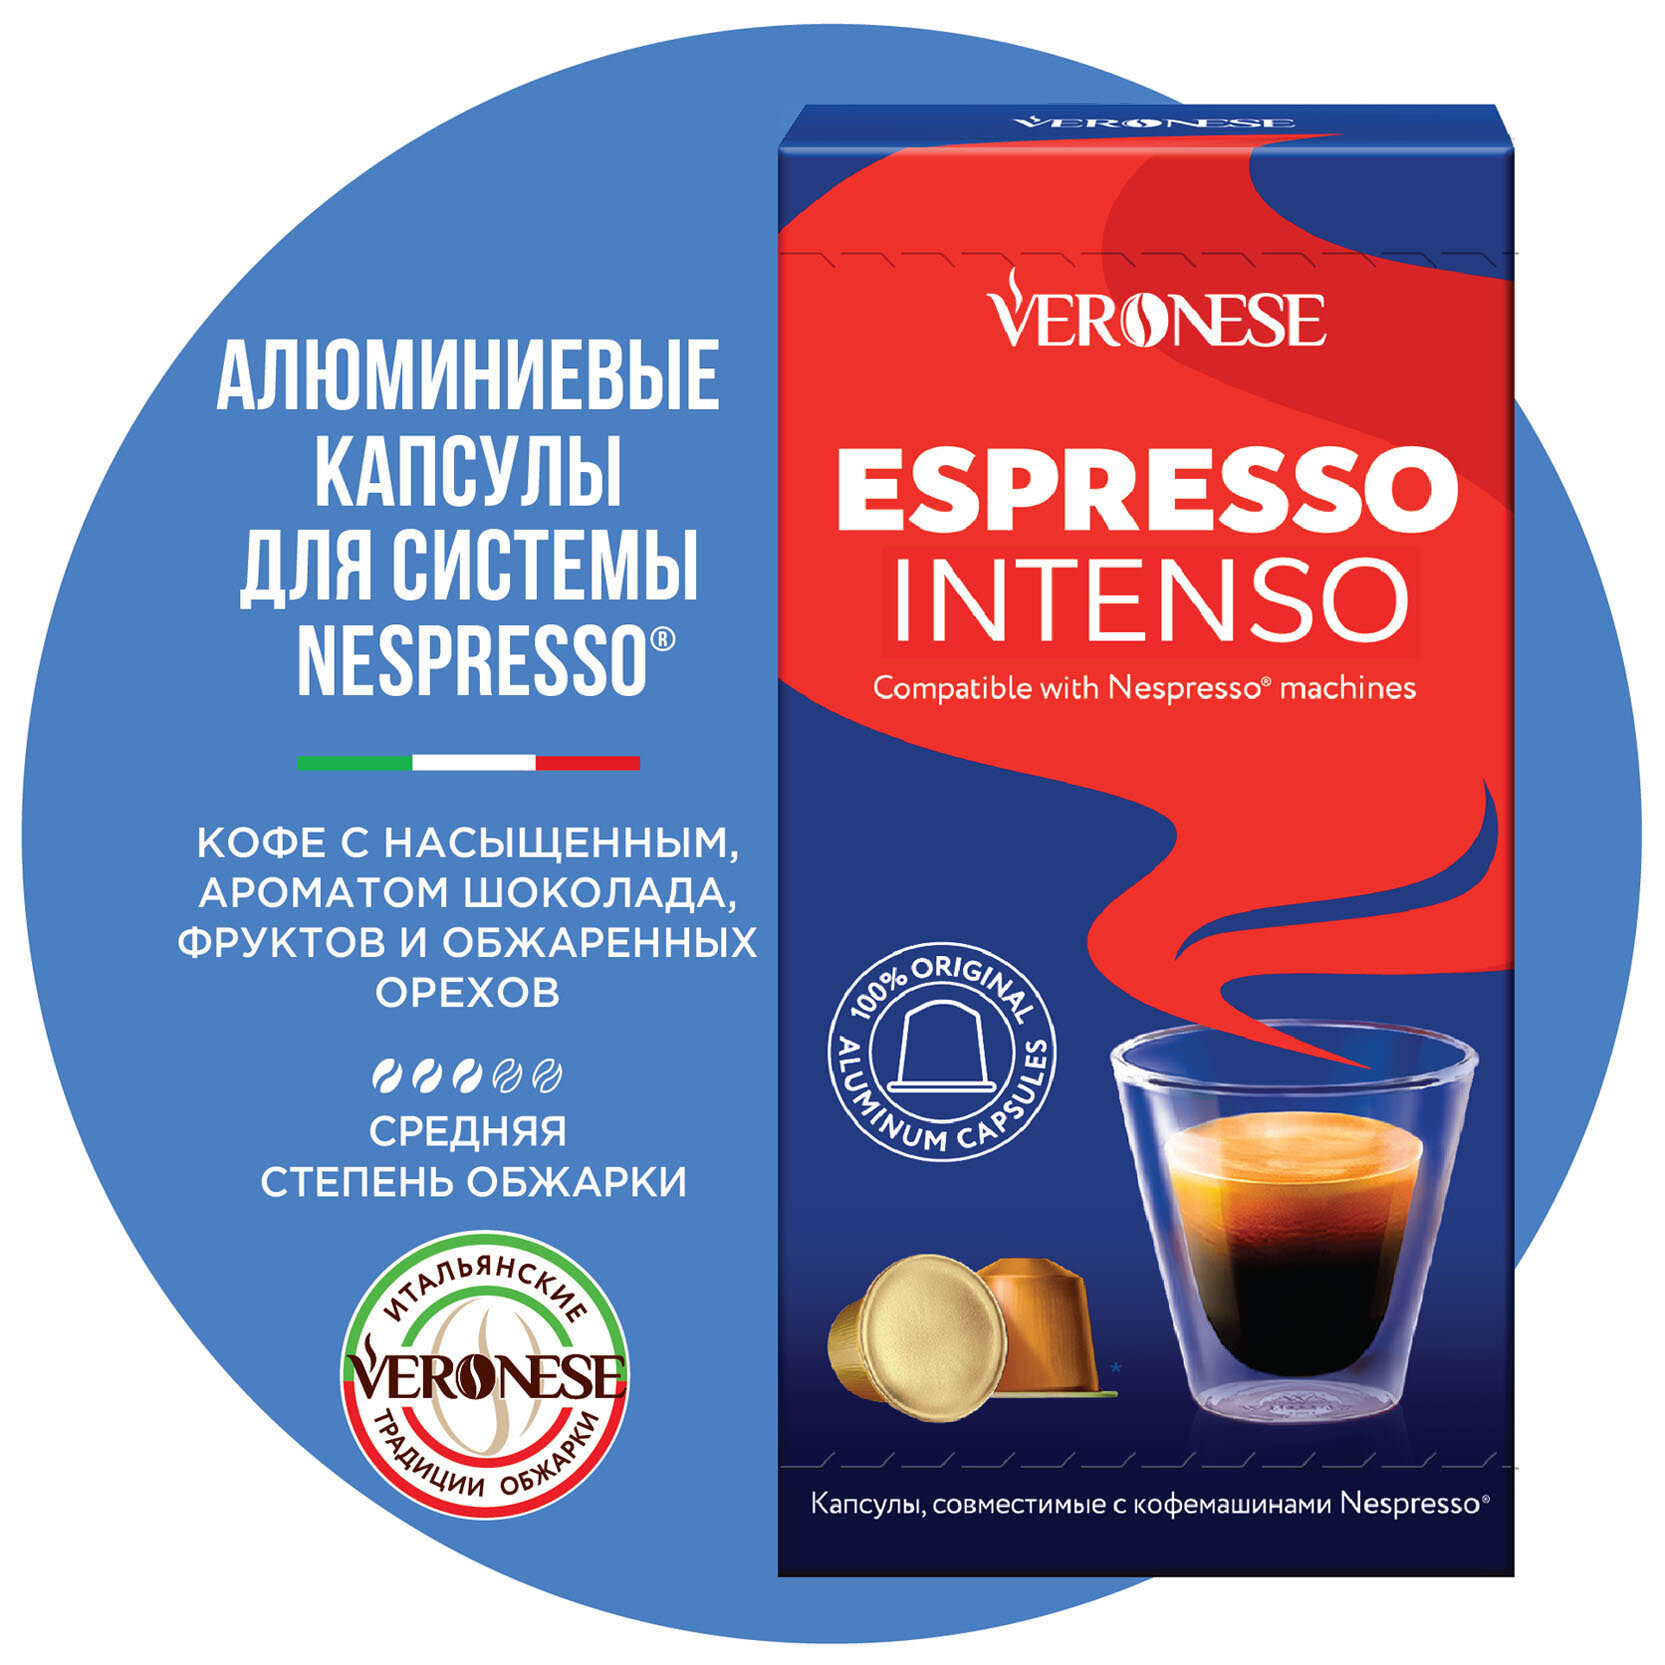 Кофе в алюминиевых капсулах для кофемашины Nespresso ESPRESSO INTENSO Veronese, 10 капсул